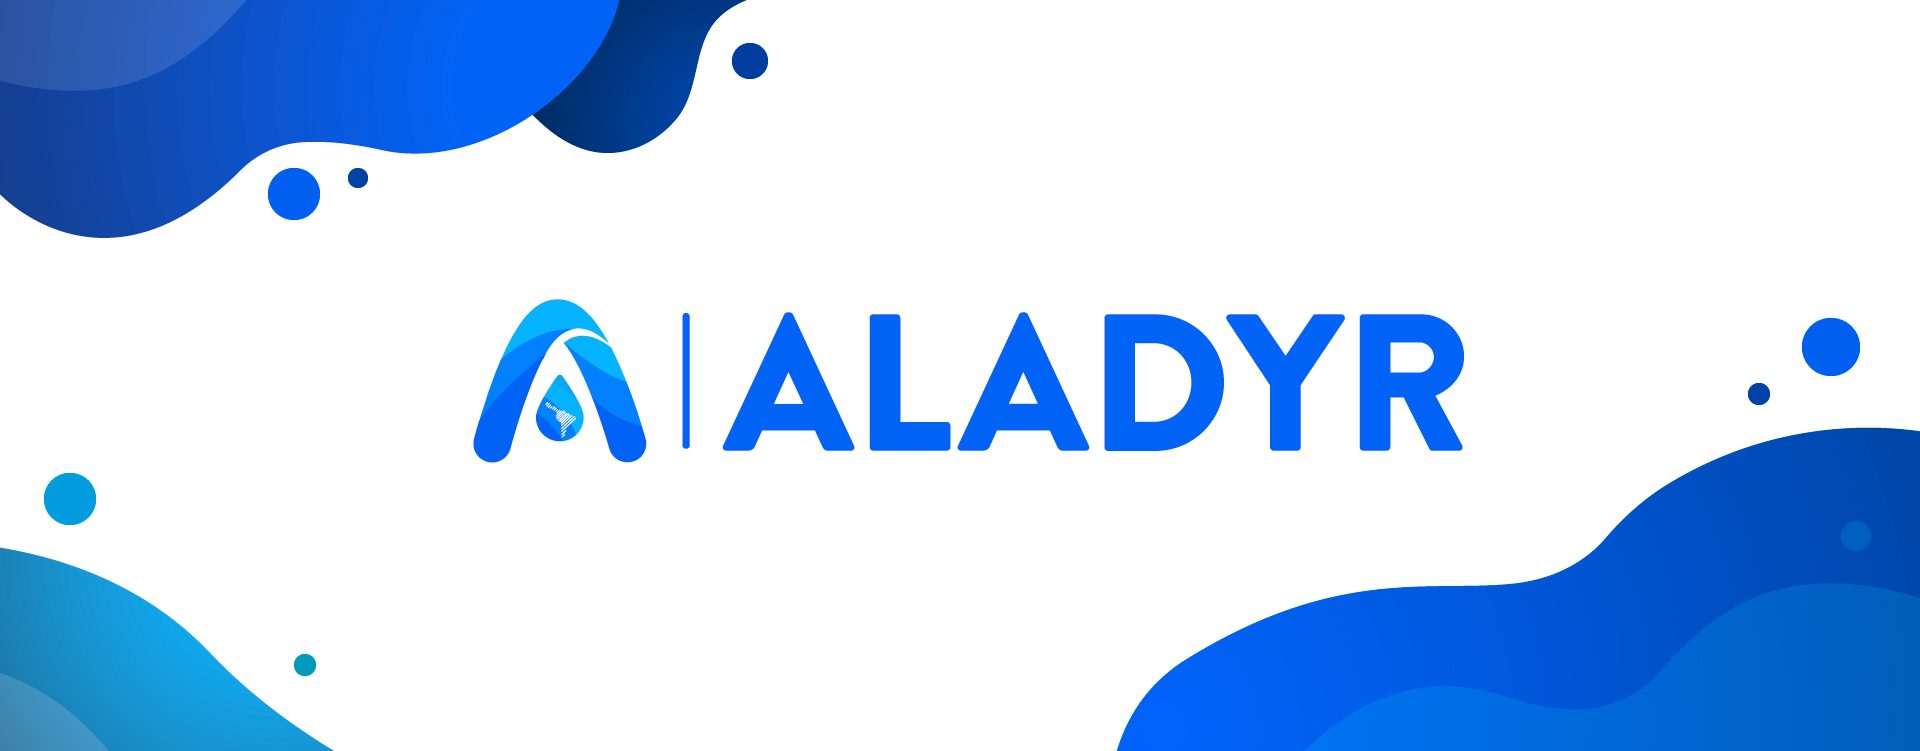 Aladyr